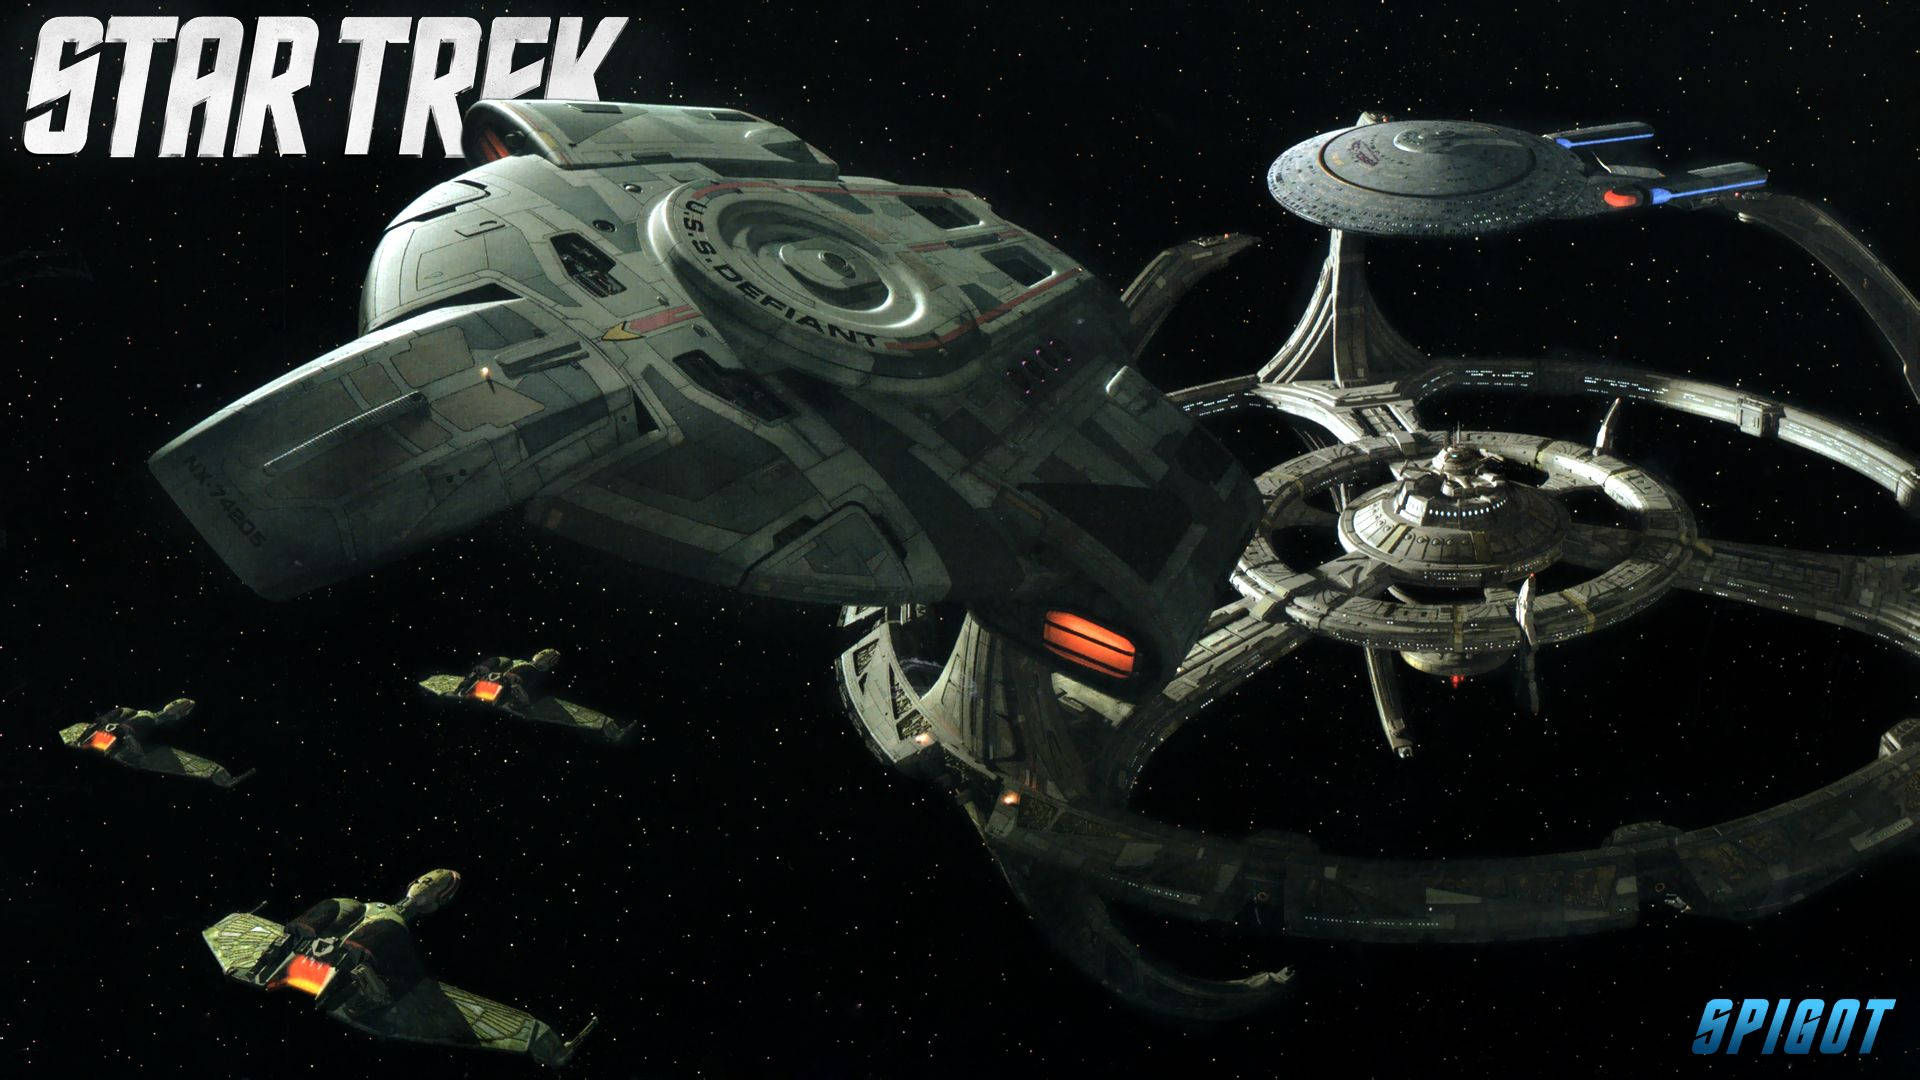 Star Trek Starship Uss Defiant At Station Wallpaper